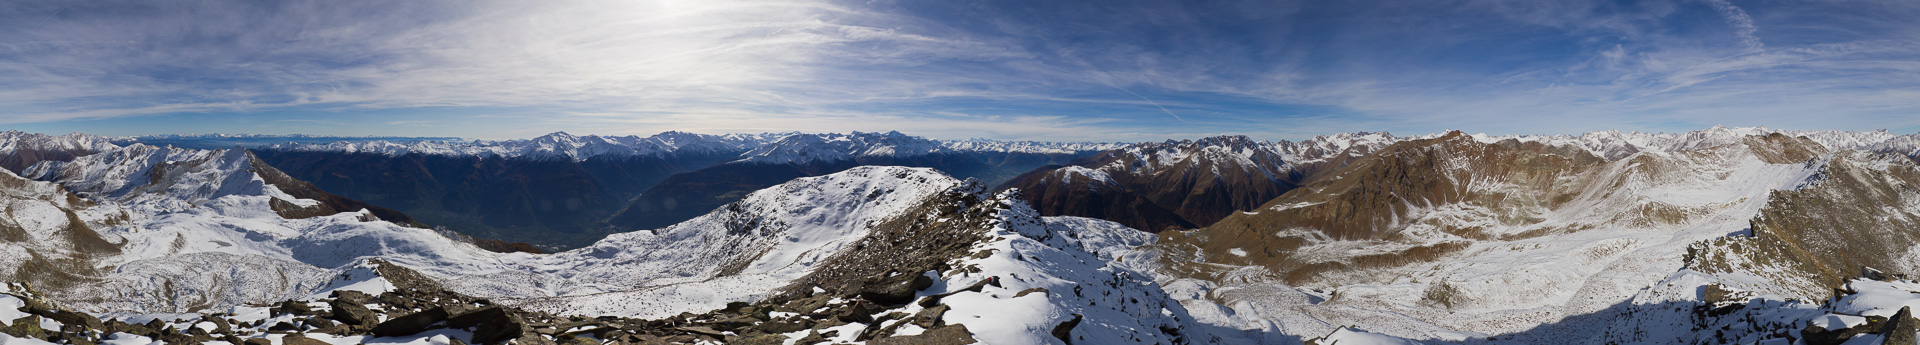 Ein allumfassendes Panorama von den Dolomiten bis zur Bernina - das Gigapixel-Panorama gibt es auf mountainpanoramas.